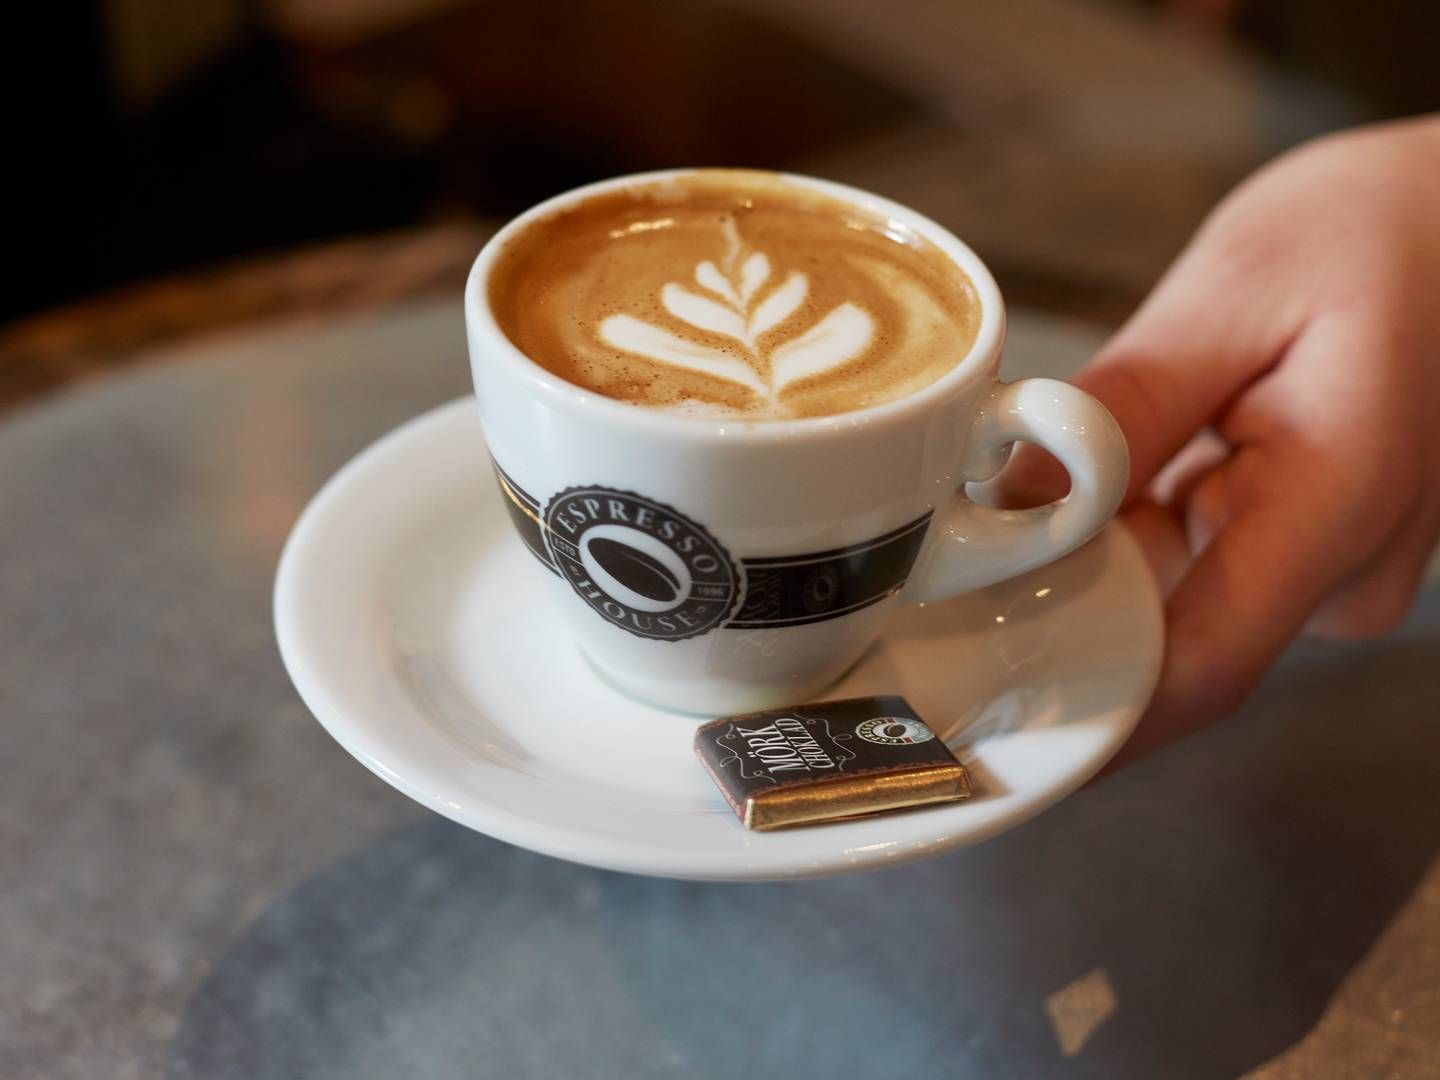 Kaffekæden Espresso House har fundet ny dansk landechef. | Foto: Pr / Espresso House.